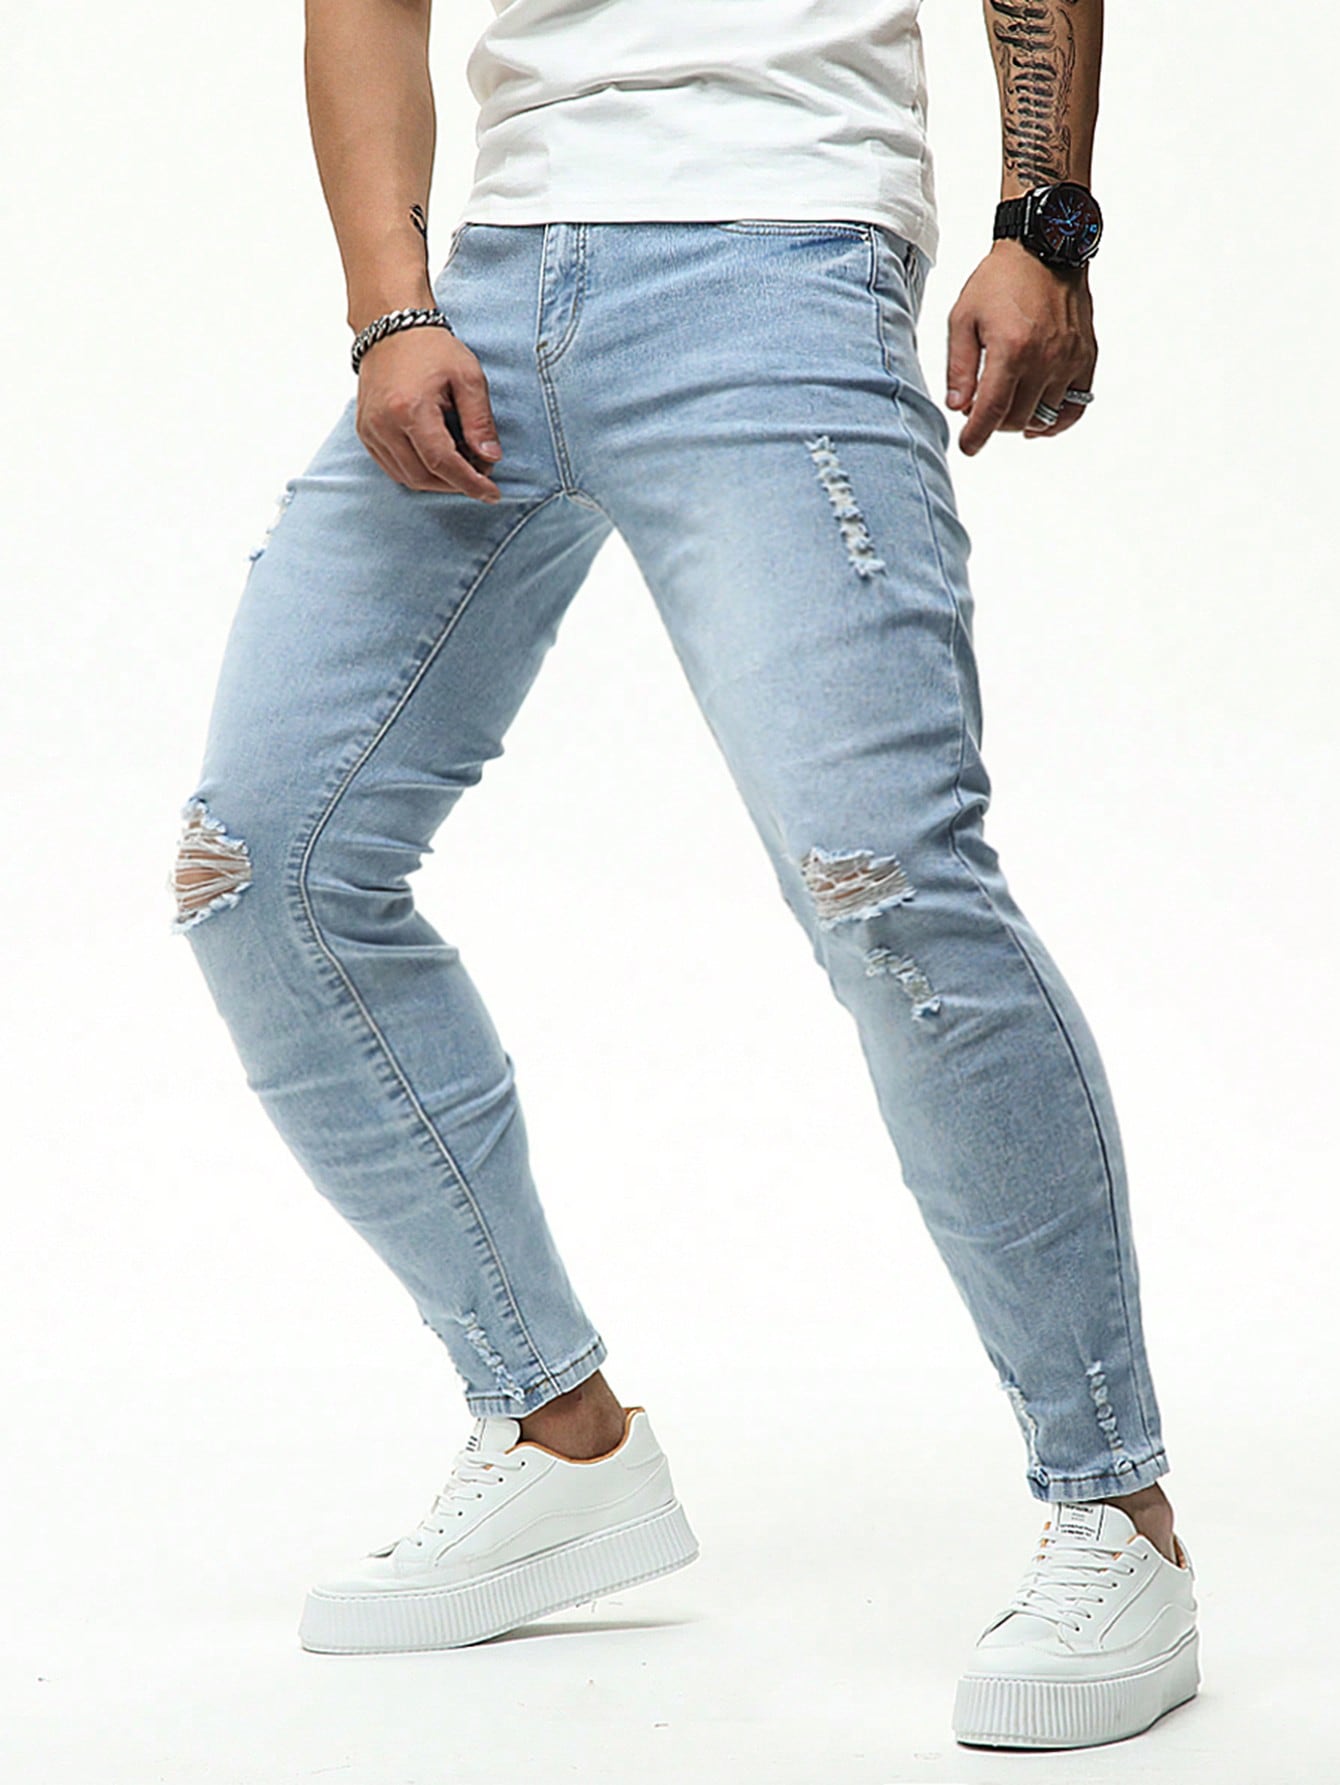 Мужские рваные джинсы узкого кроя Manfinity LEGND, легкая стирка мужские узкие джинсы рваные джинсы стрейчевые джинсы для мужчин облегающие джинсы с дырками мужские джинсы с принтом разные стили разме